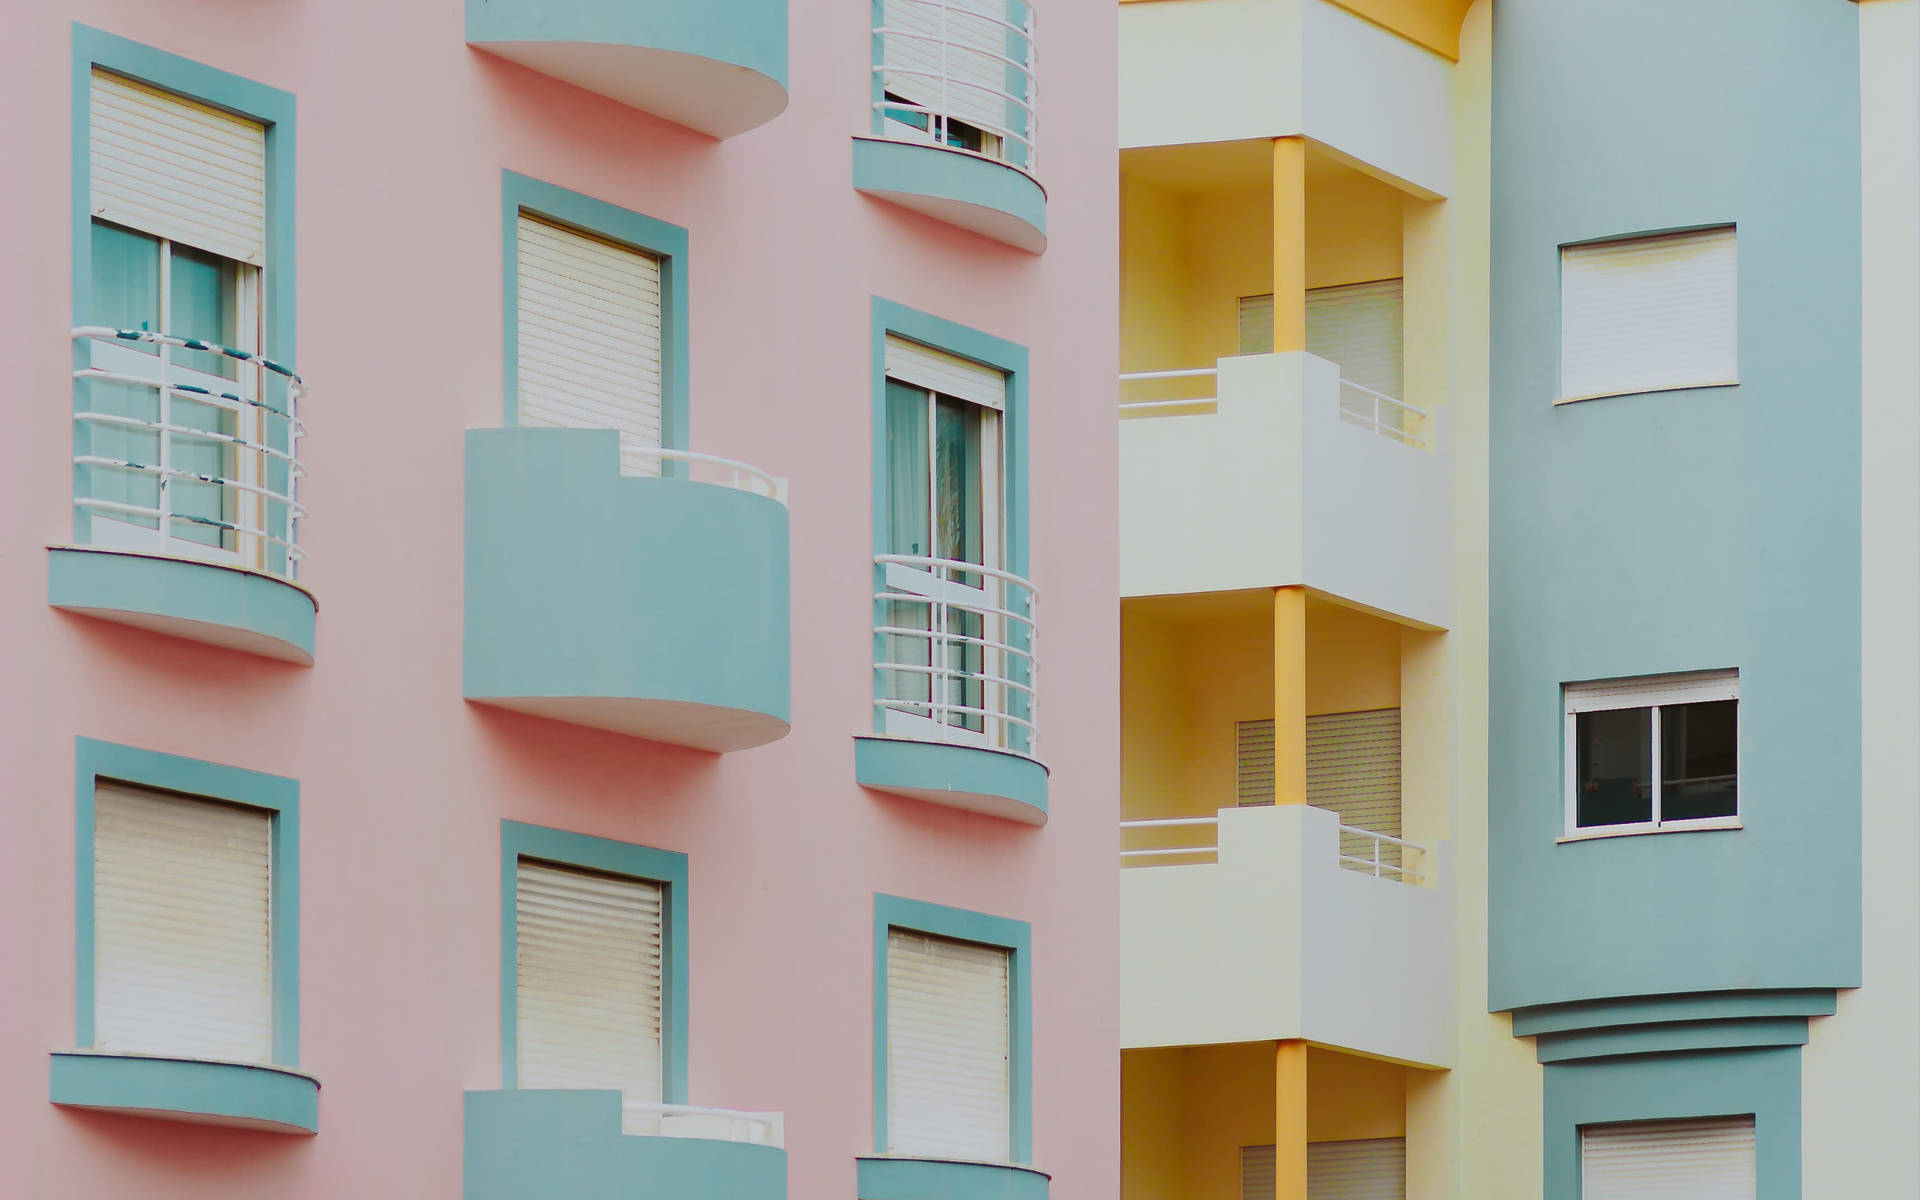 Minimalist Residential Buildings In Pastel Colors